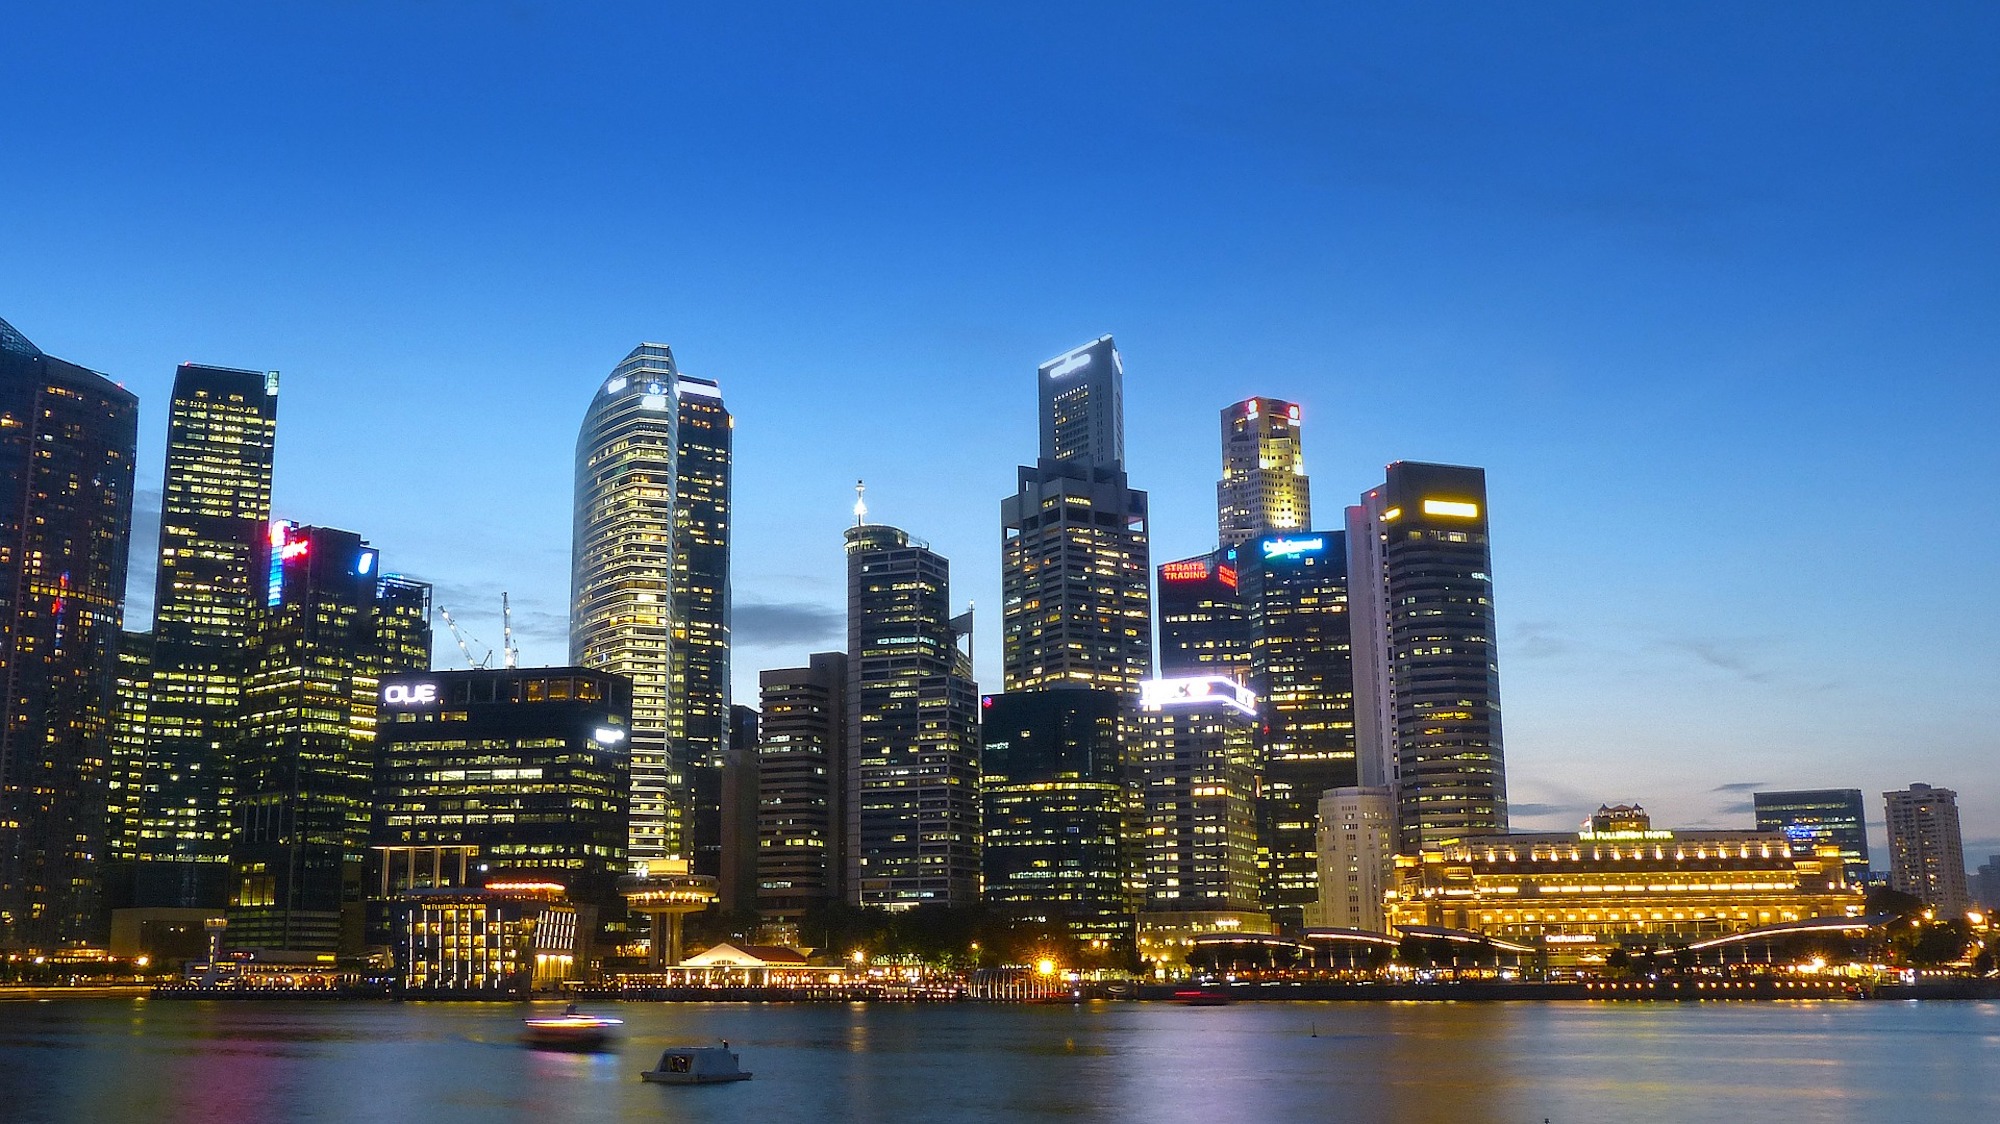 El Foro de Davos se traslada a Singapur en 2021 por la pandemia